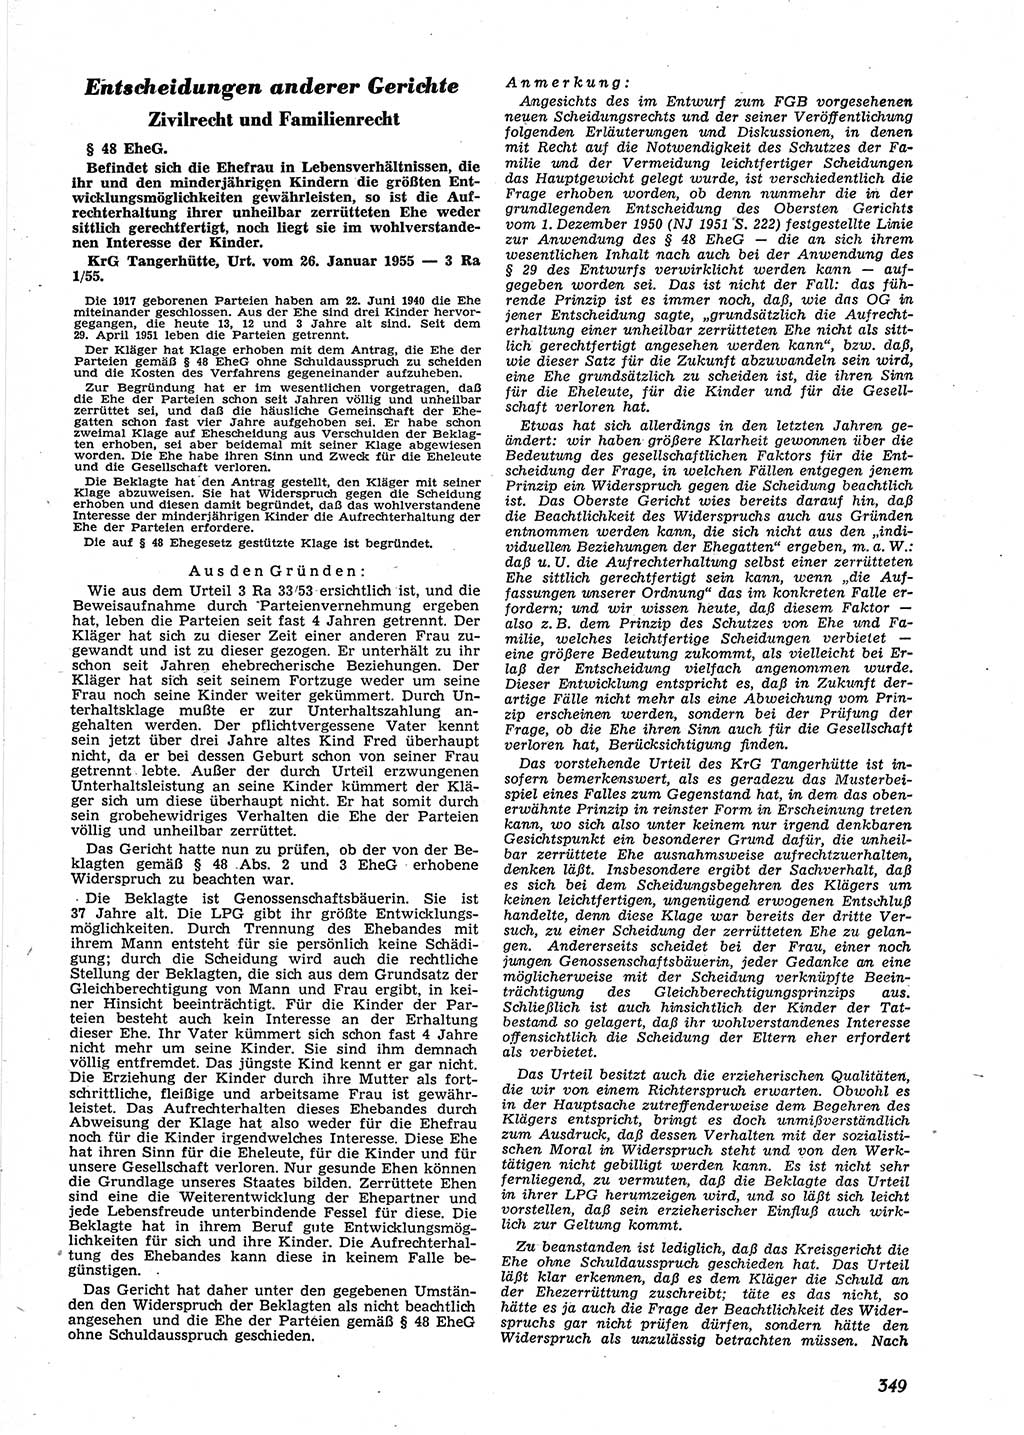 Neue Justiz (NJ), Zeitschrift für Recht und Rechtswissenschaft [Deutsche Demokratische Republik (DDR)], 9. Jahrgang 1955, Seite 349 (NJ DDR 1955, S. 349)